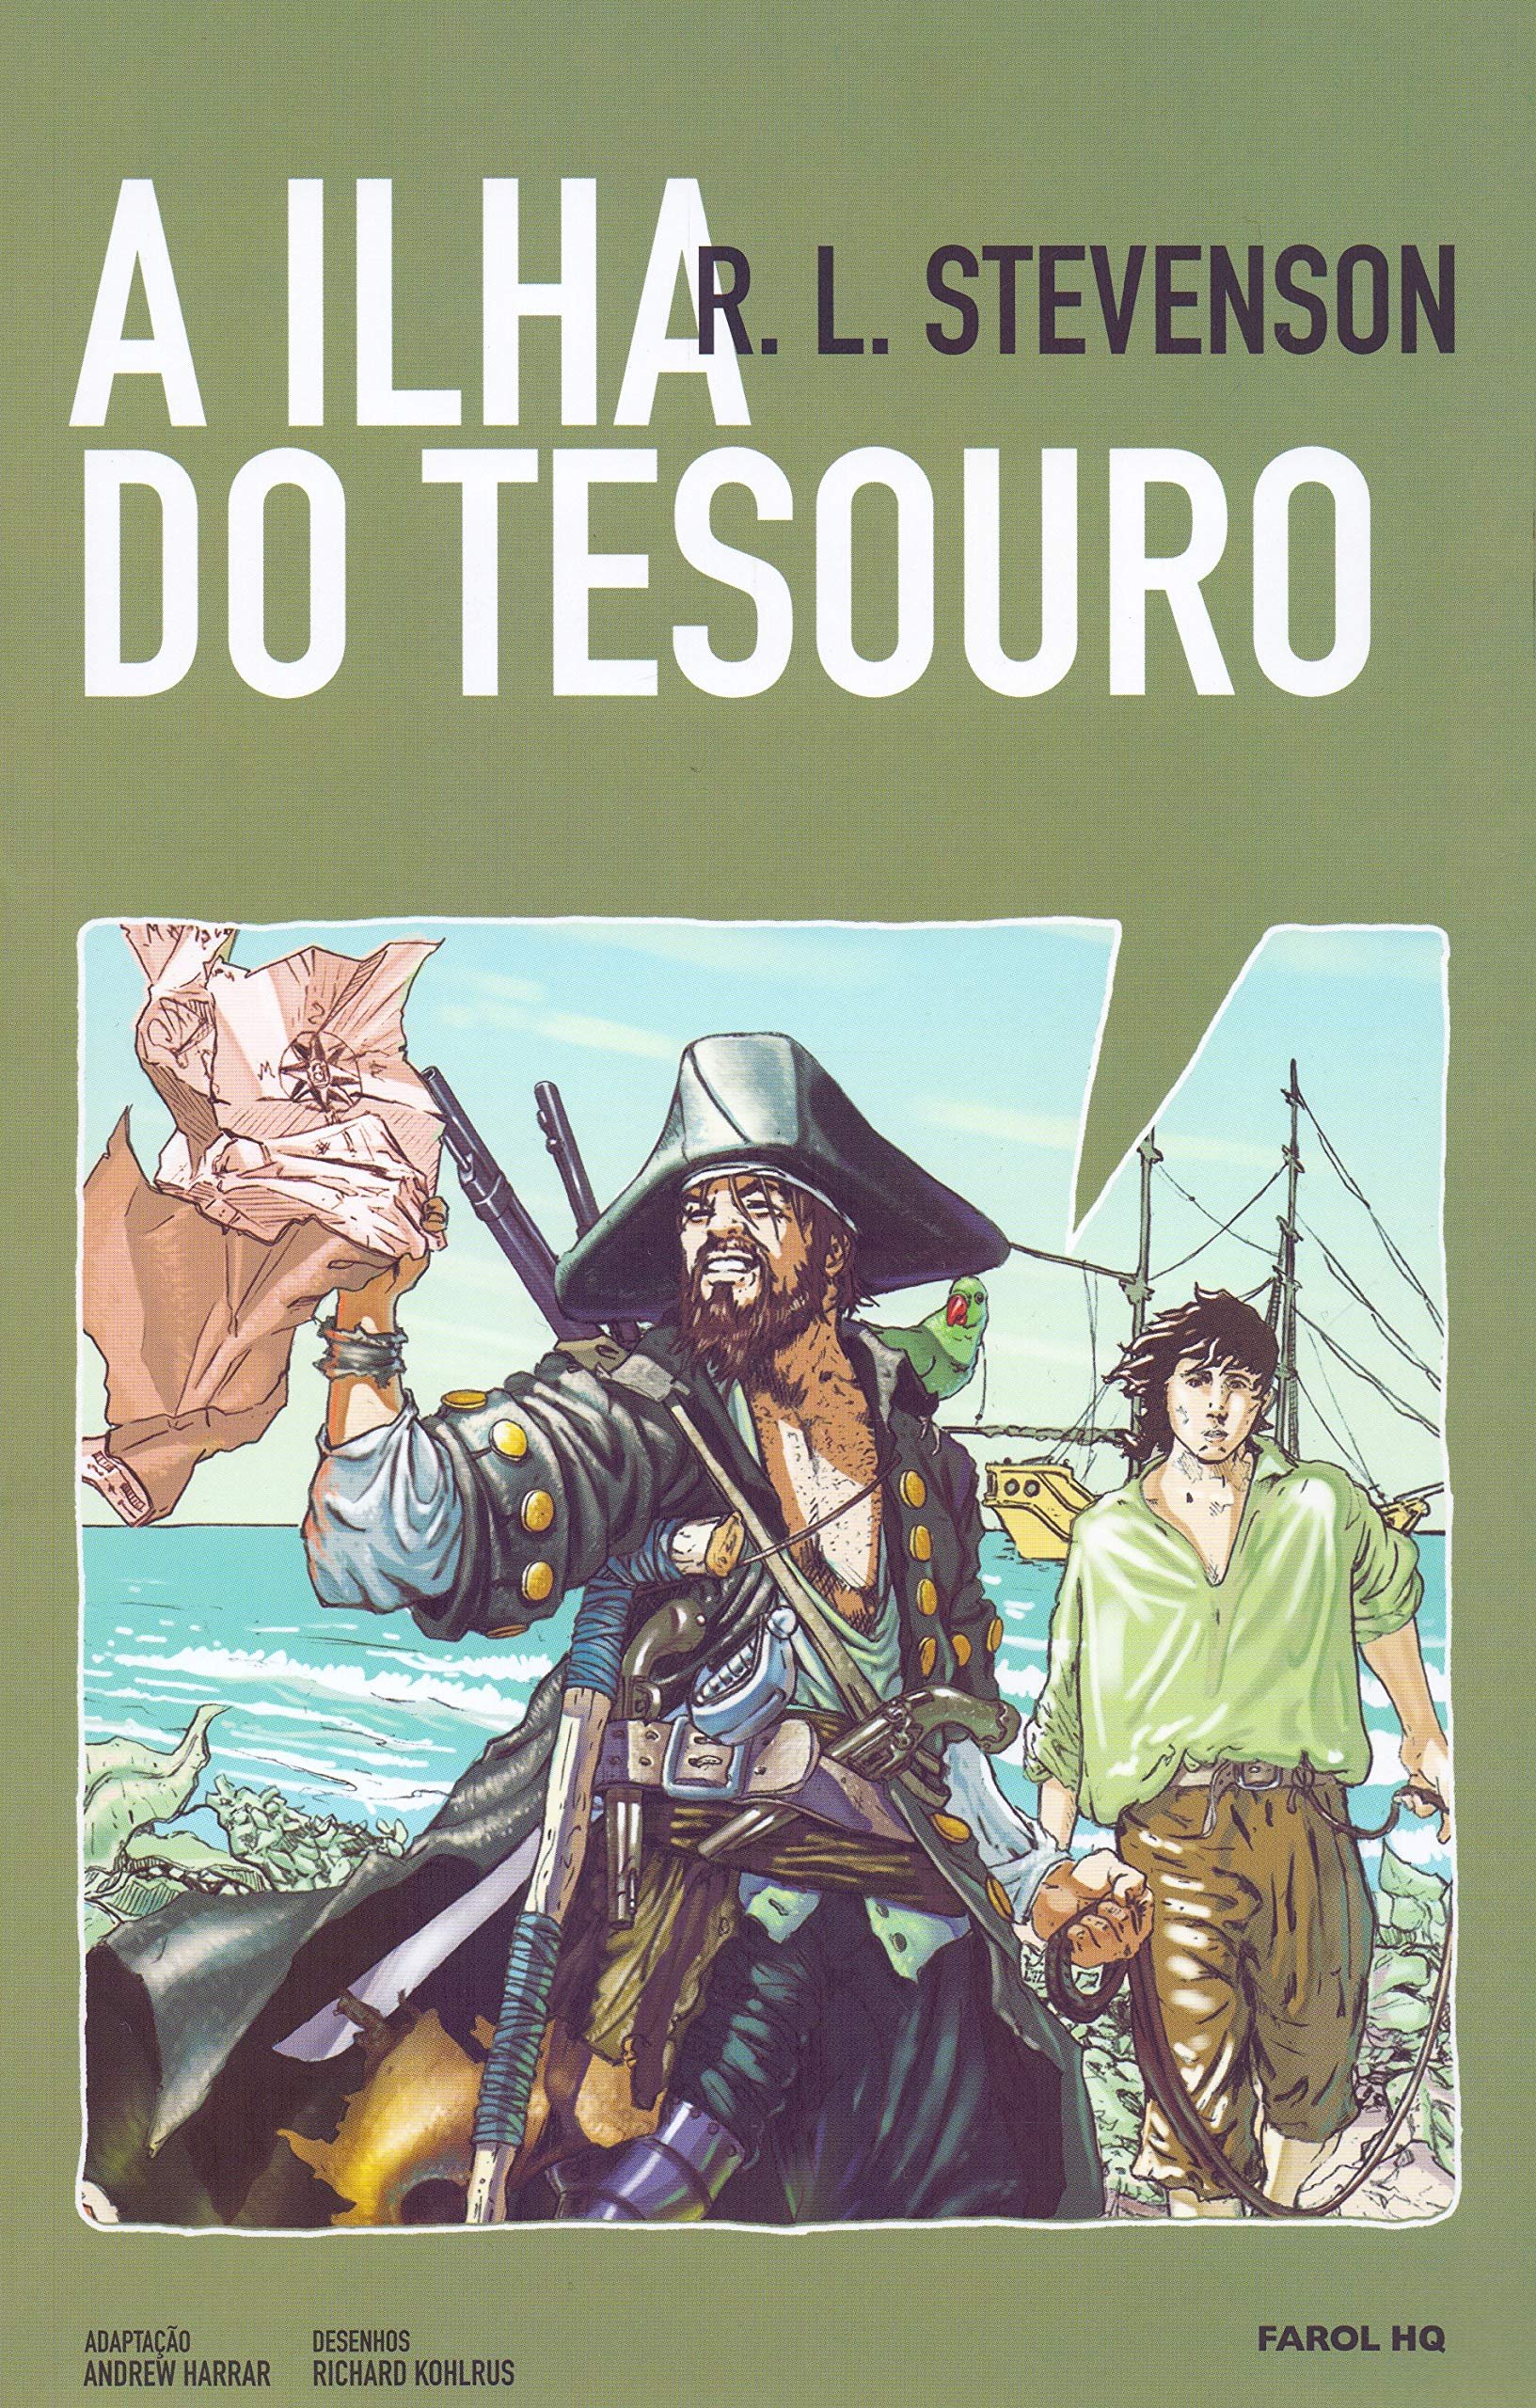 Capa do livro 'A Ilha do Tesouro'.